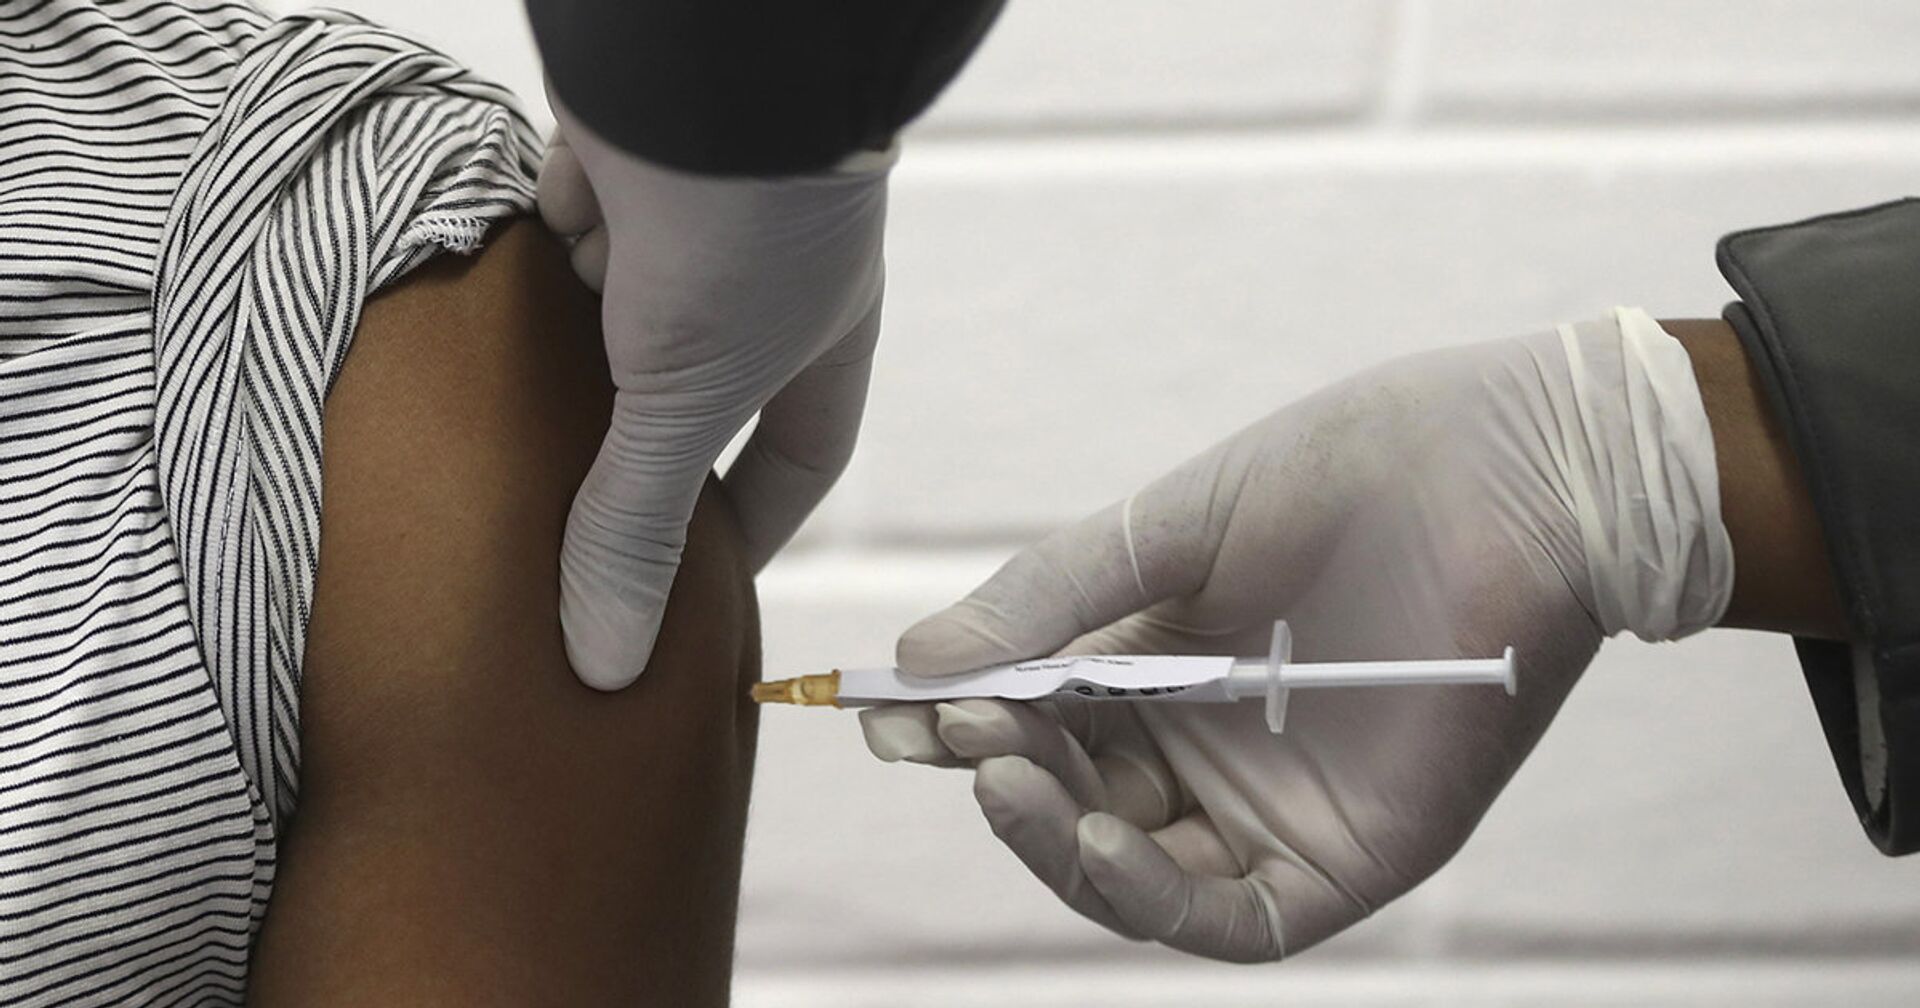 Доброволец получает вакцину от коронавируса в Йоханнесбурге - ИноСМИ, 1920, 01.12.2020